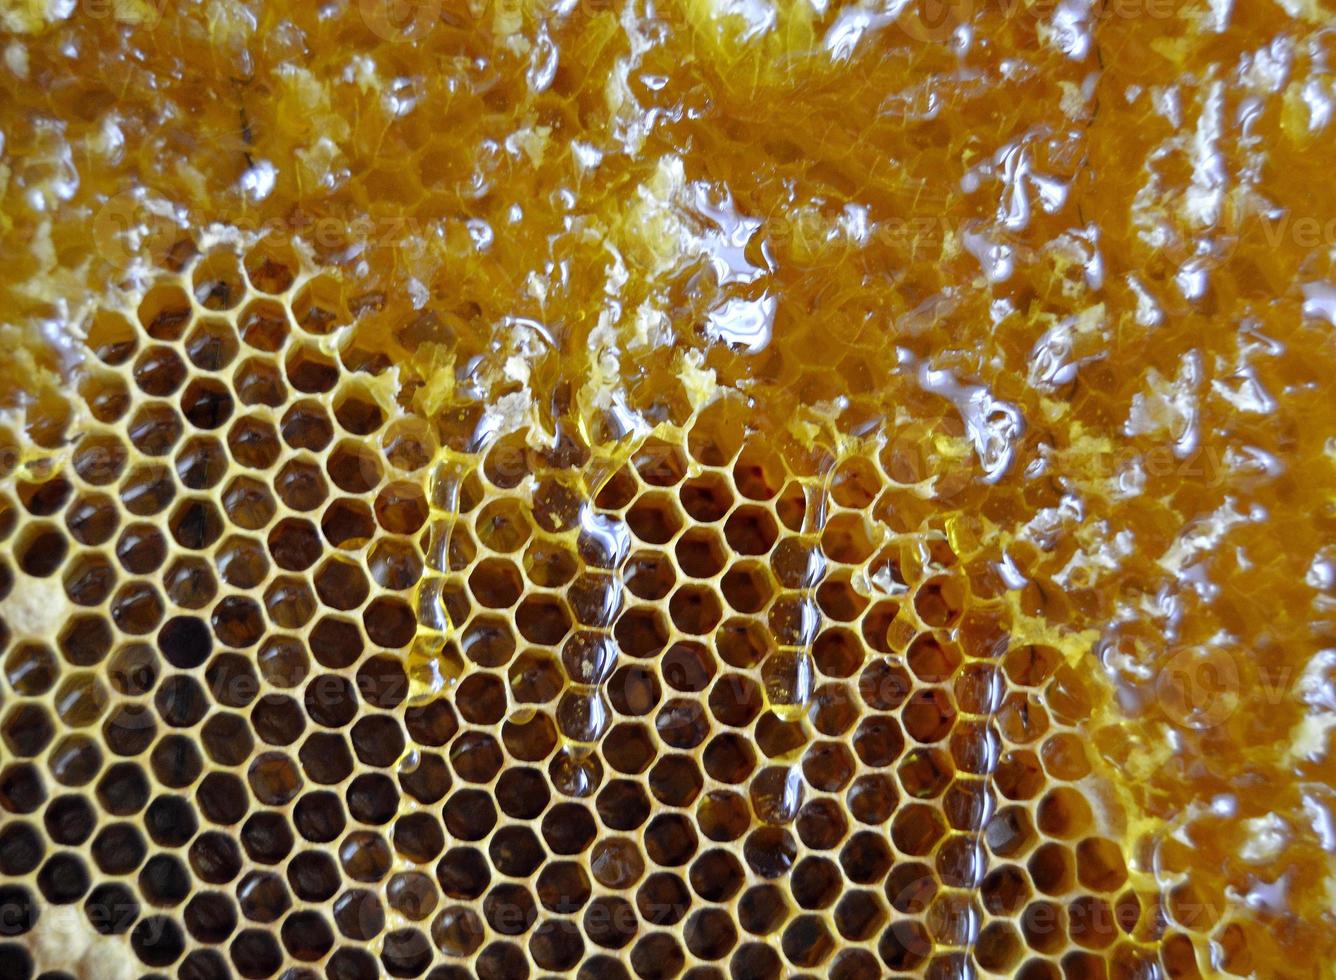 gota de miel de abeja goteo de panales hexagonales foto